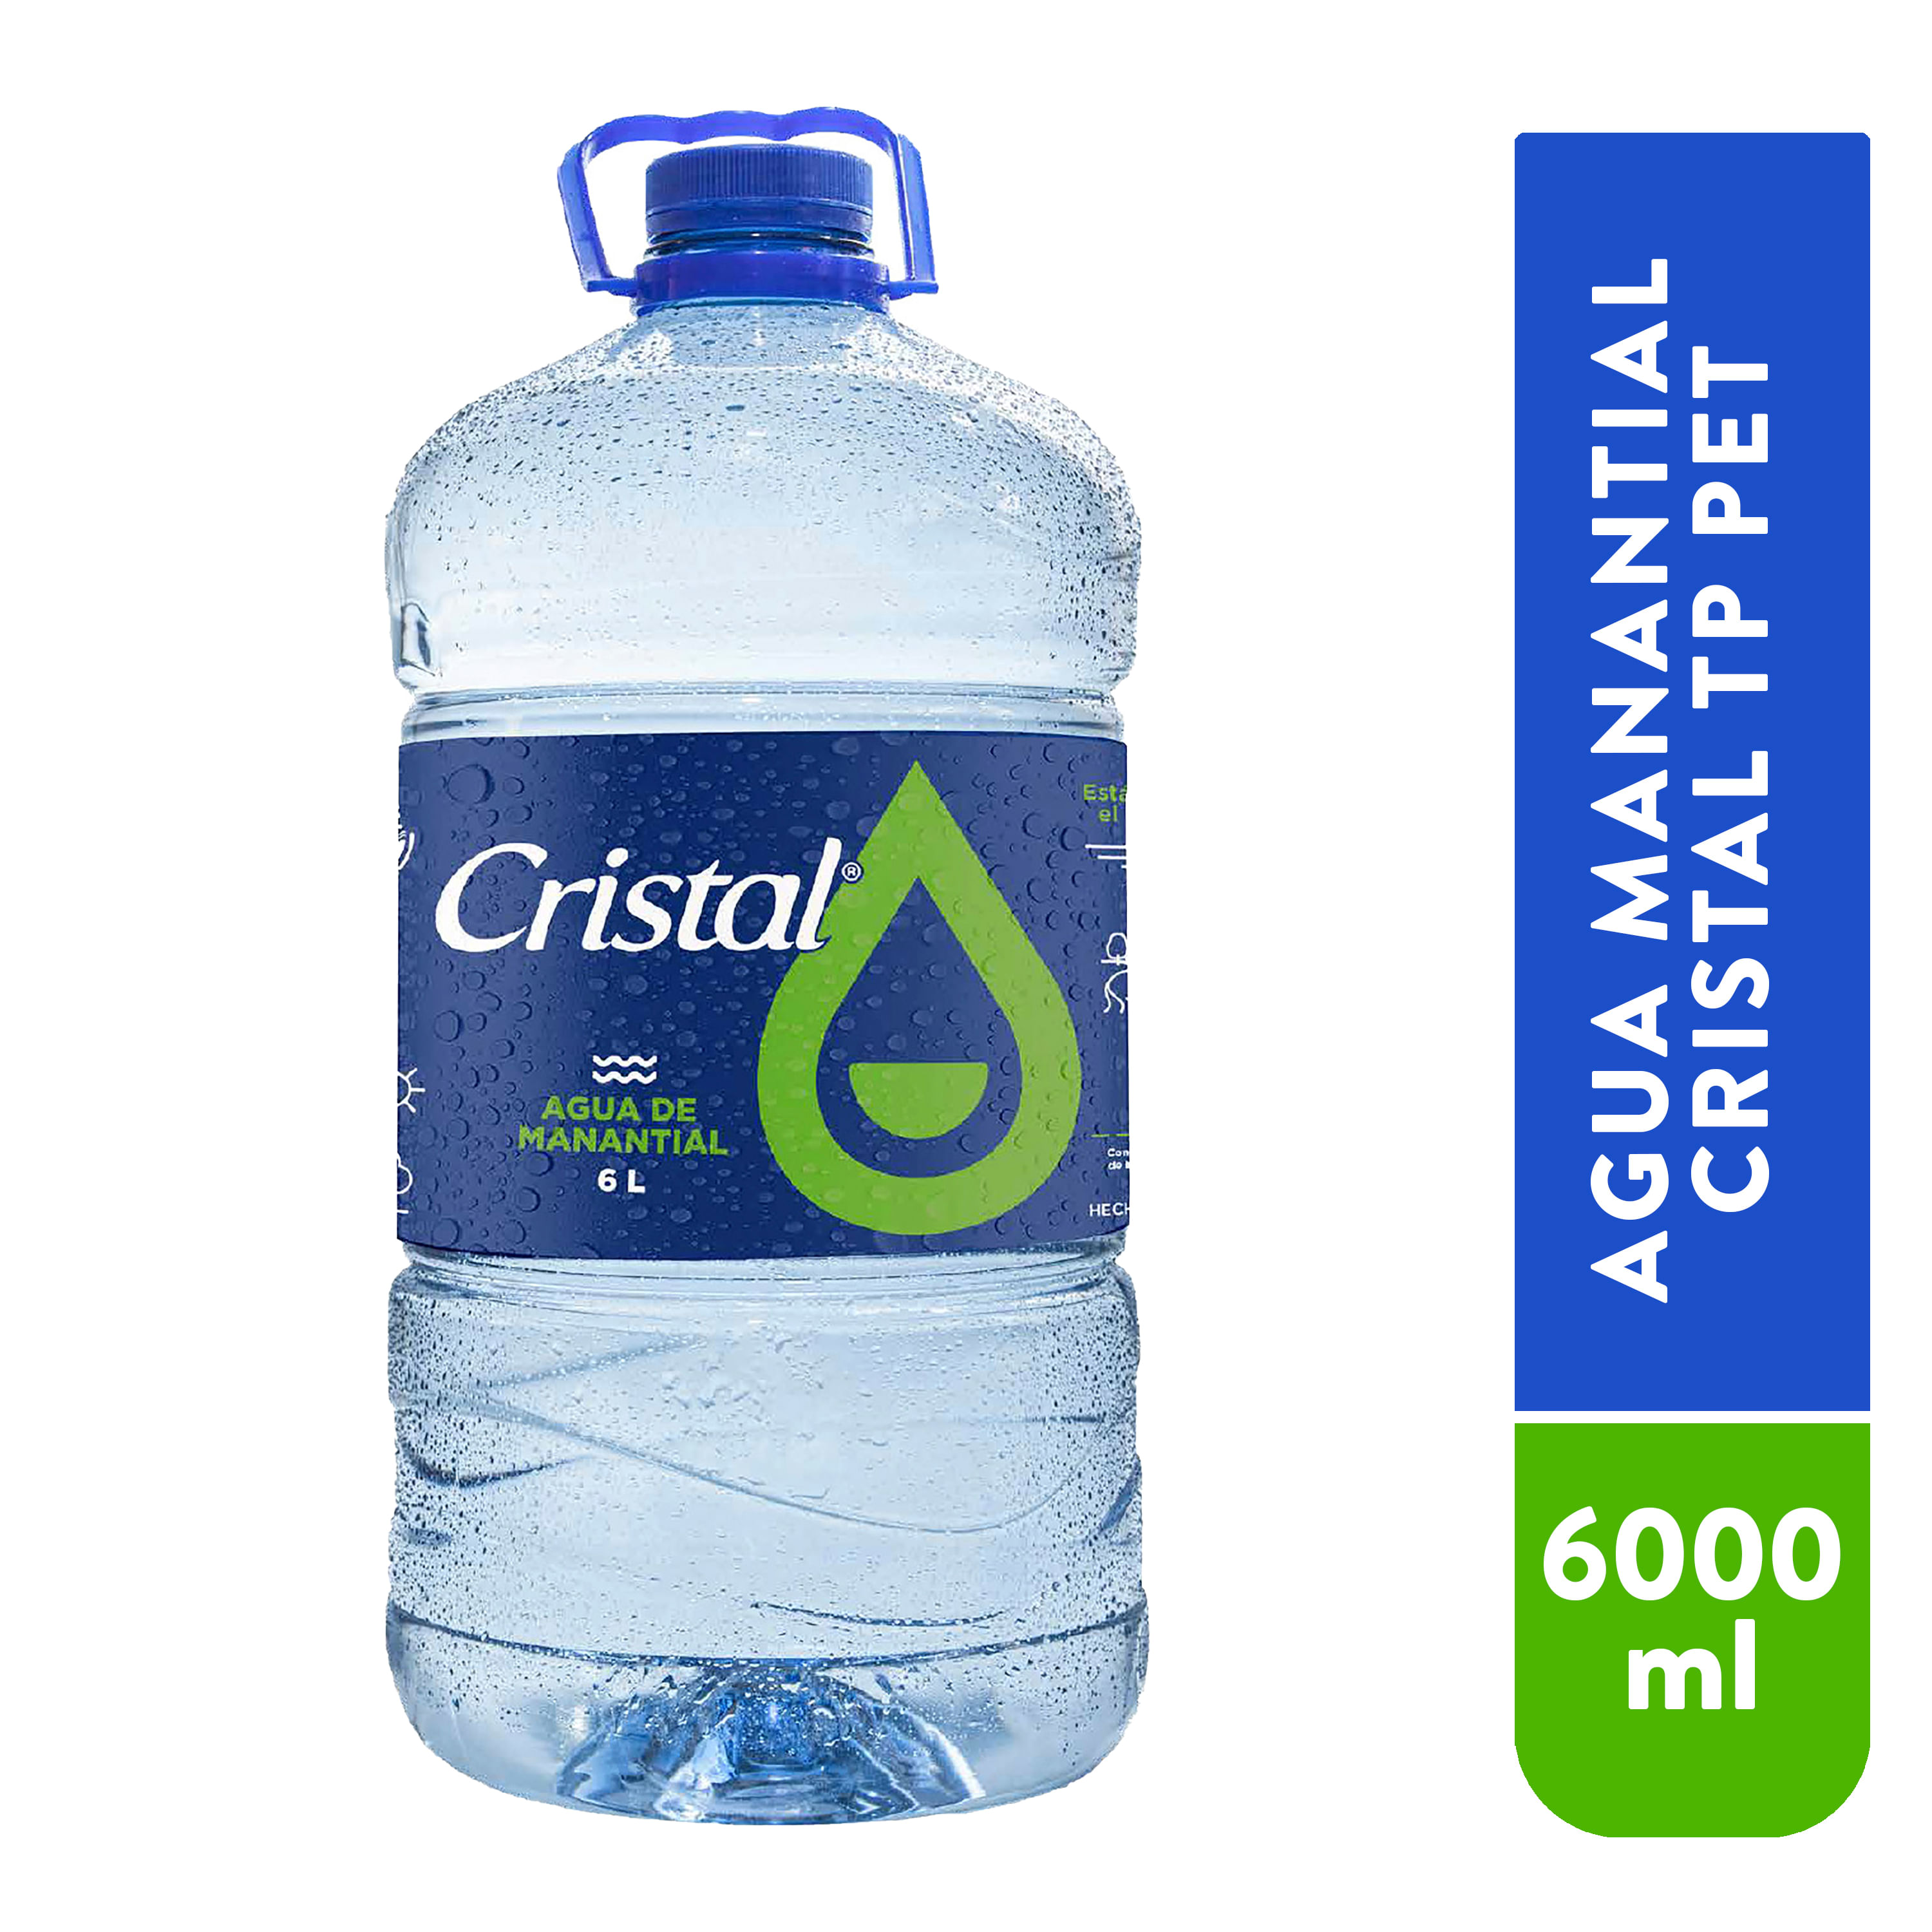 Wladhe - Agua Cristal